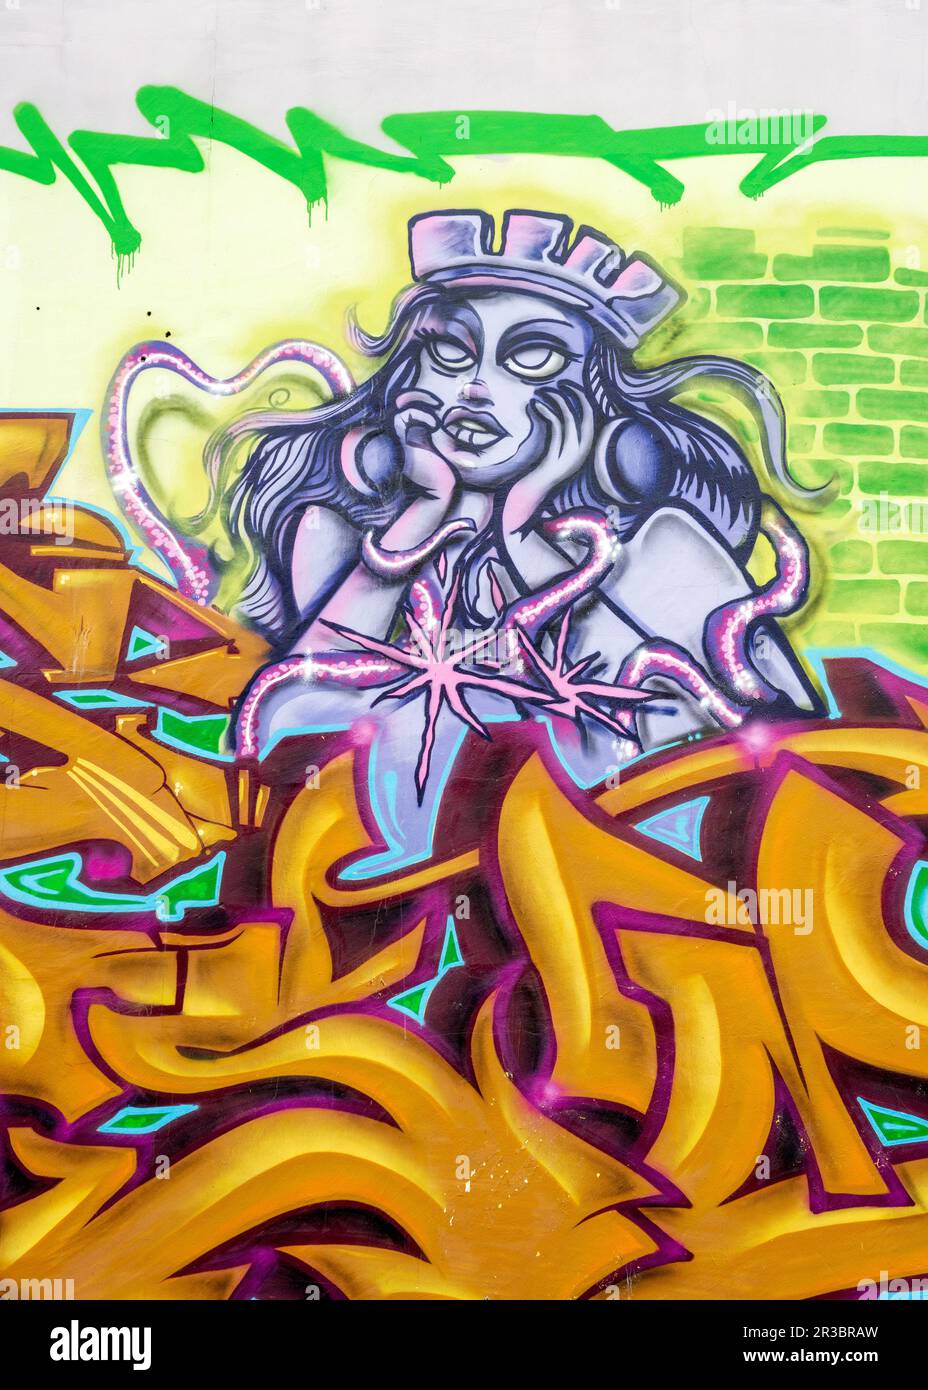 Personnage féminin portant une couronne comme graffiti urbain art de rue à Sofia, Bulgarie, Europe de l'est, Balkans, UE Banque D'Images